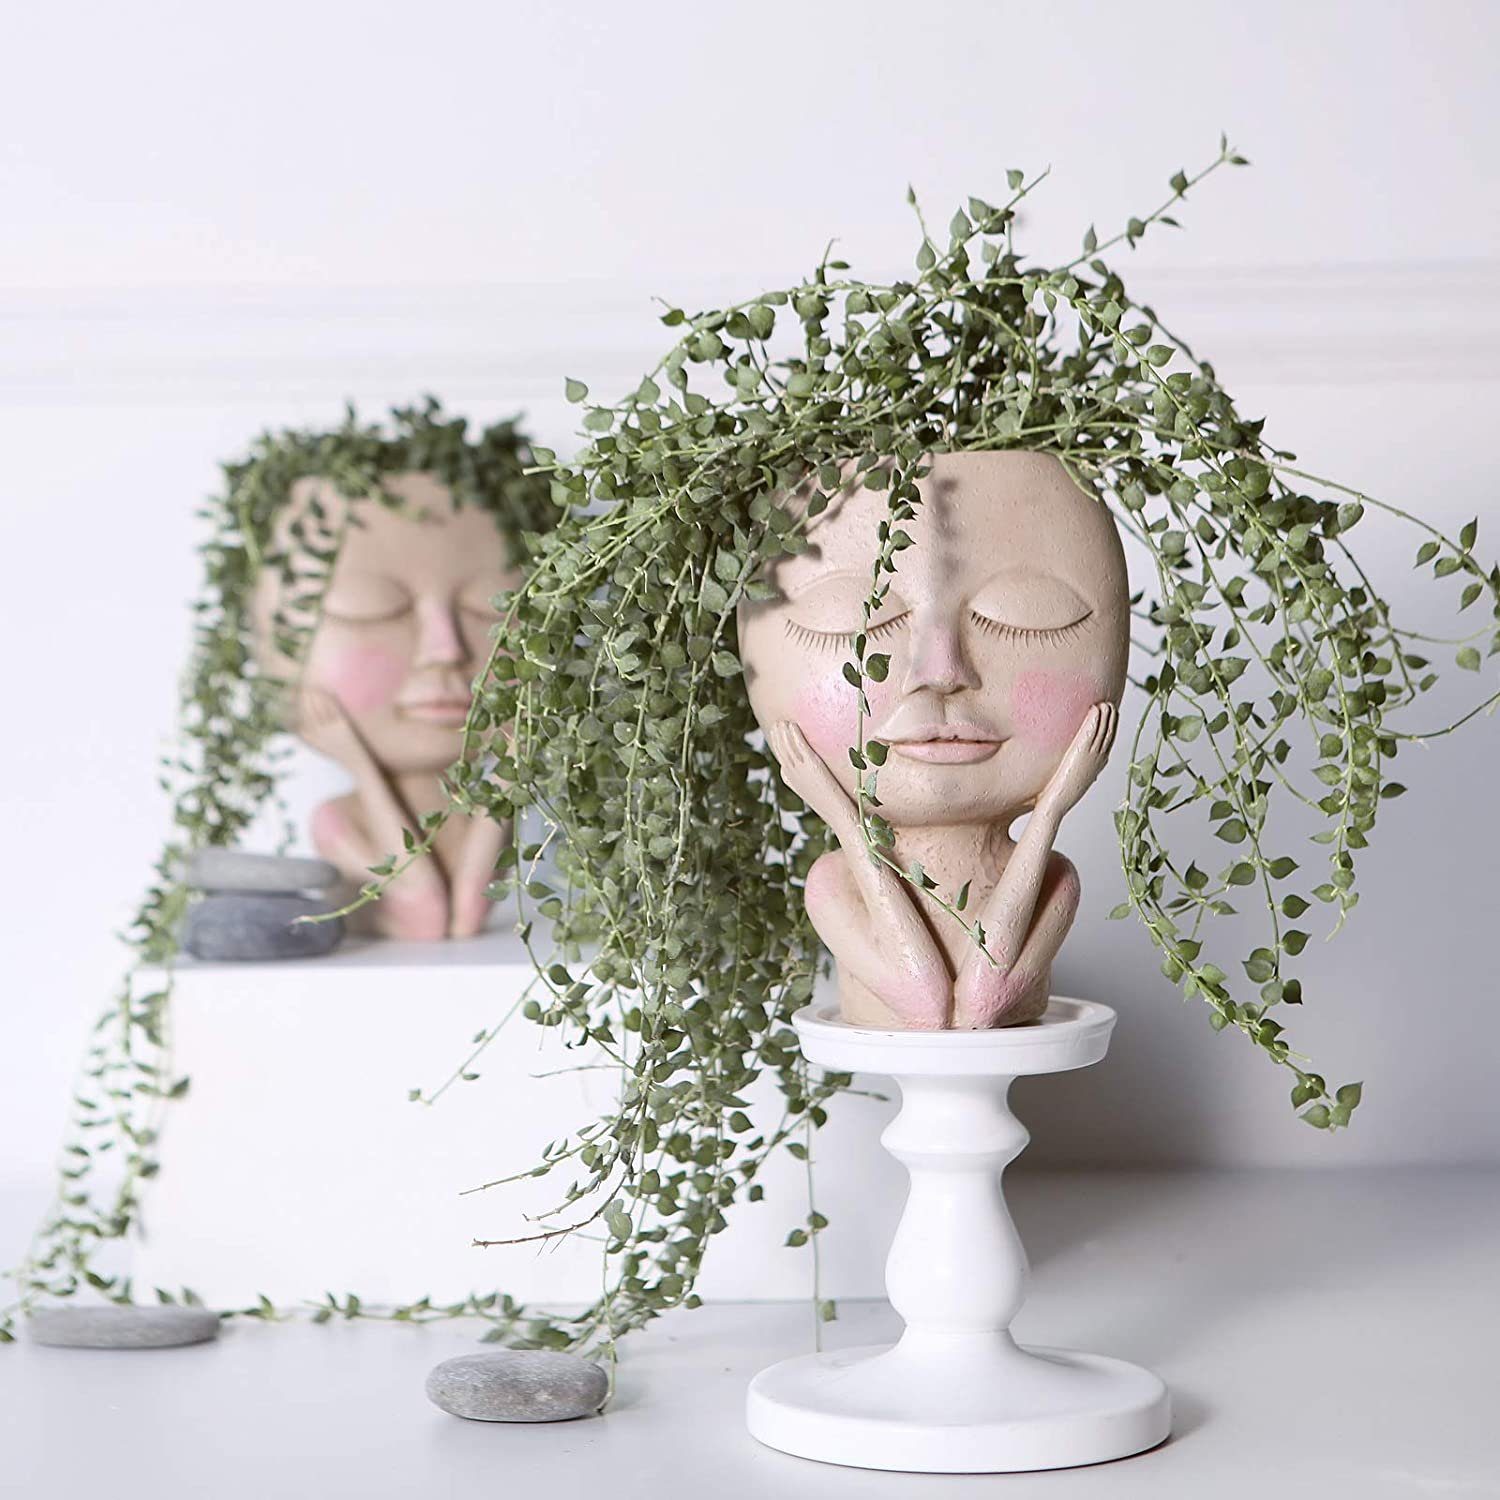 mit Kopf mit Design,Blumentöpfe Hole, Blumentöpfe XDeer Gesicht,Menschlicher menschlicher Gesicht Blumentopf Drainage Design Gesicht,kreative Menschlicher Vase Kopf